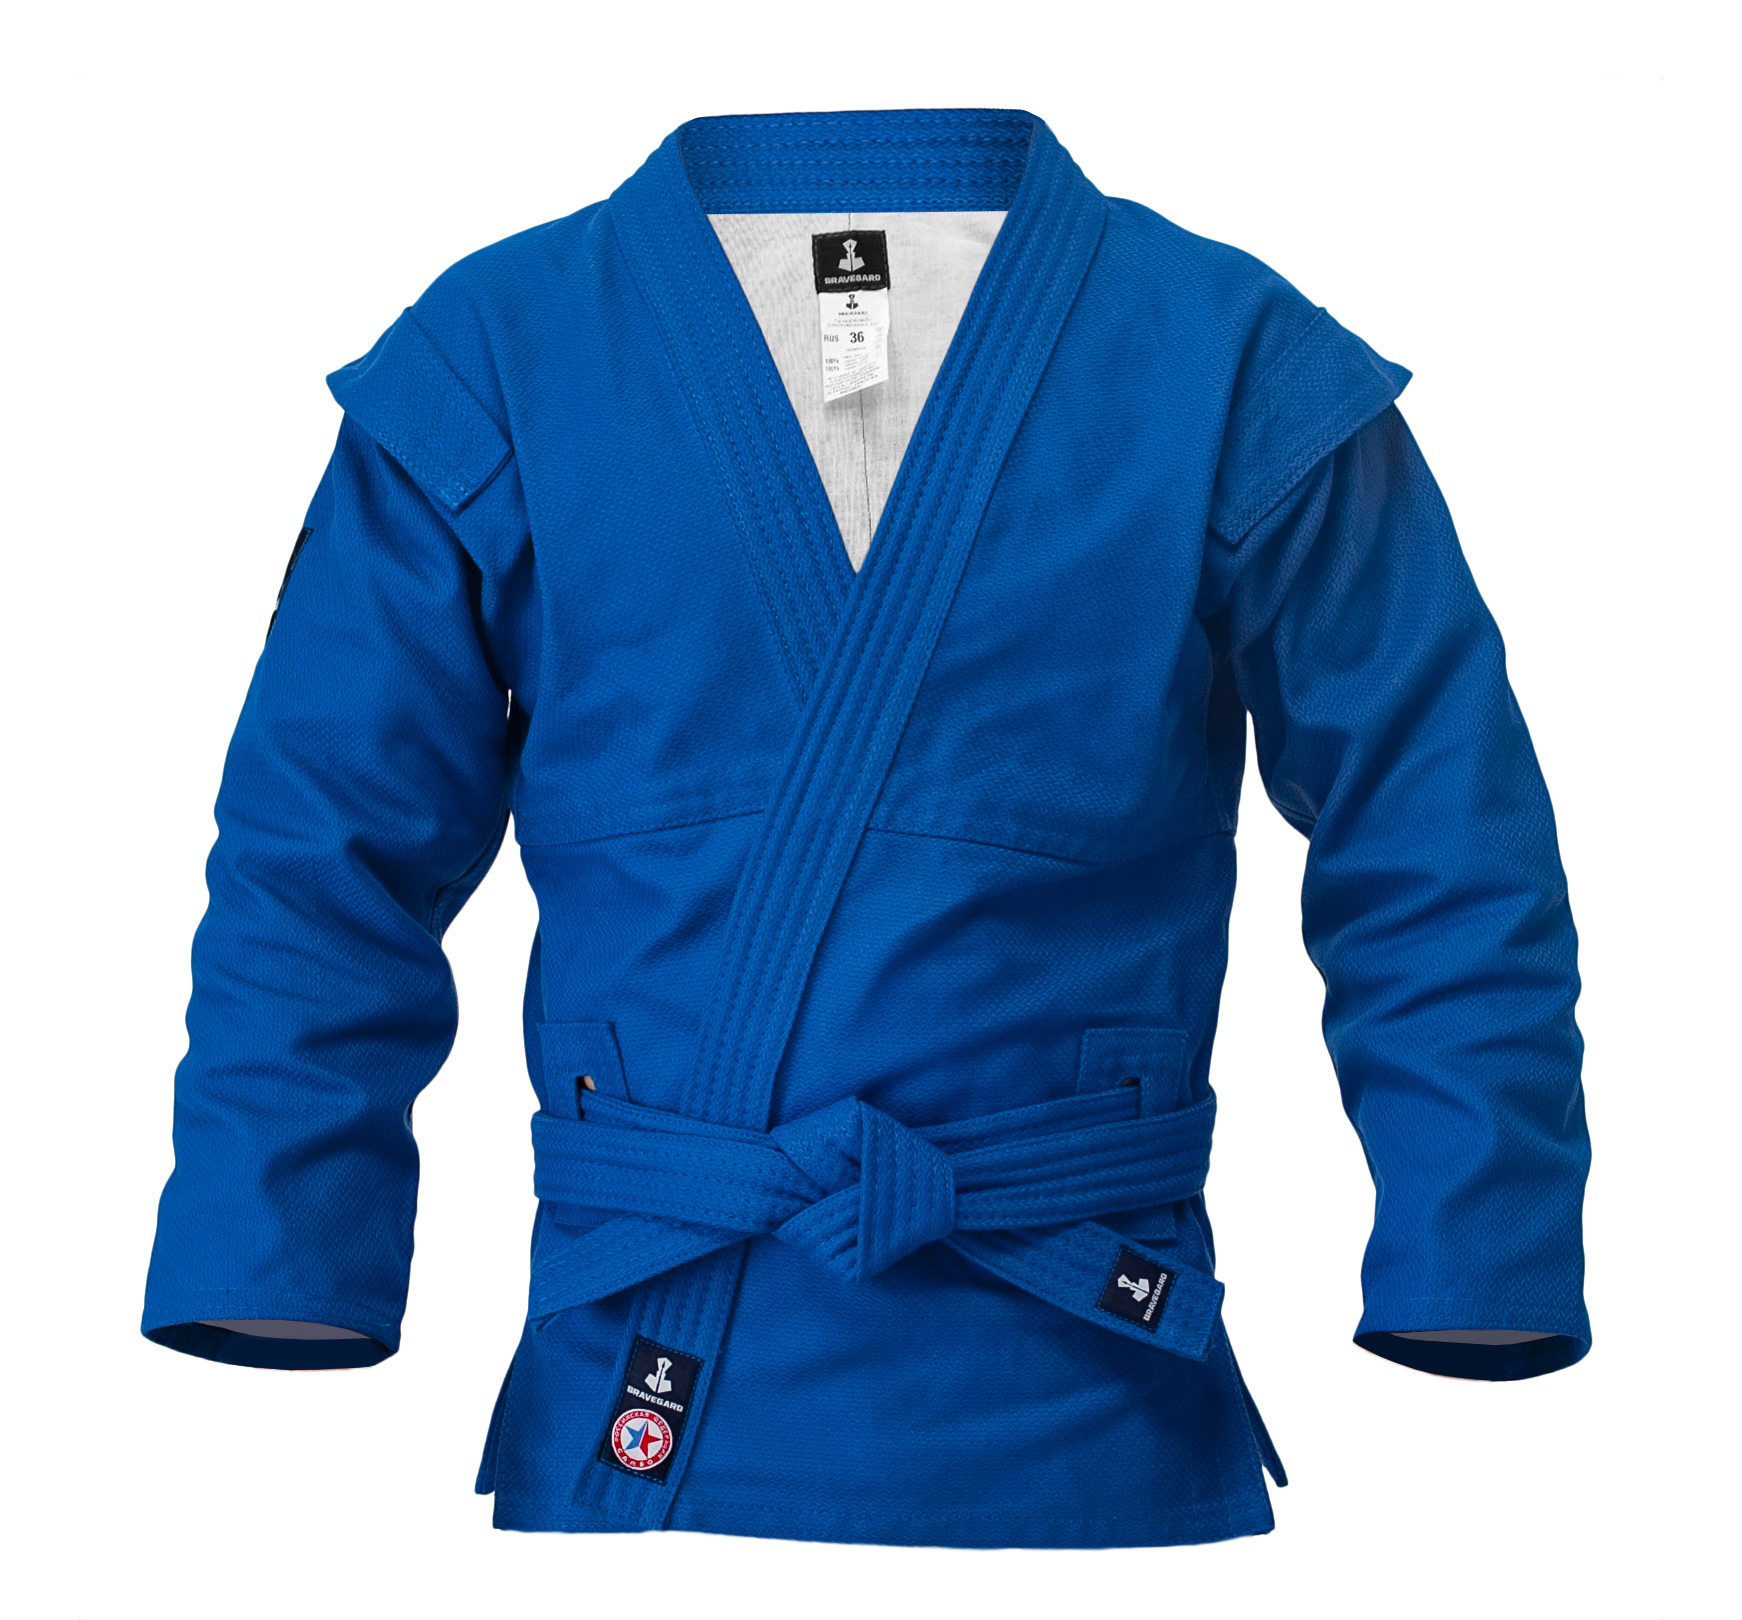 Купить форму для самбо. Куртка для самбо ВФС BRAVEGARD синий. Куртка для самбо ВФС BRAVEGARD Ascend Junior красный. Куртка для самбо BRAVEGARD синяя. Форма самбо BRAVEGARD.